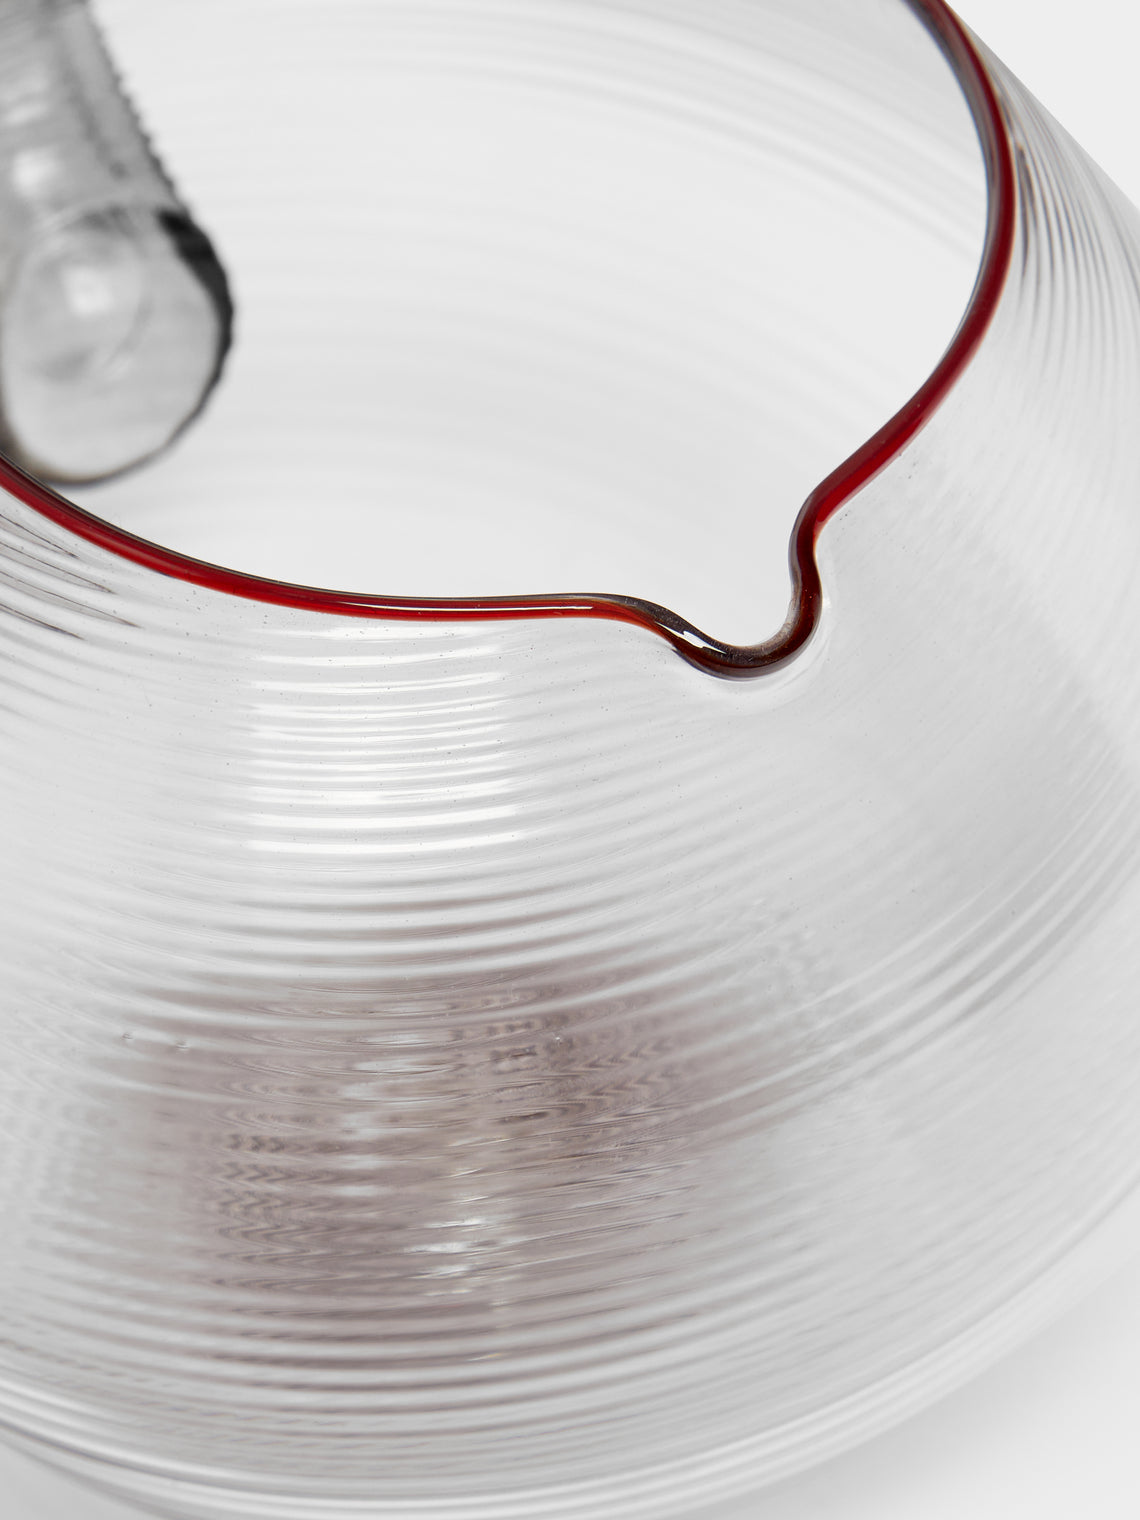 Giberto - Palla Hand-Blown Murano Glass Water Jug -  - ABASK